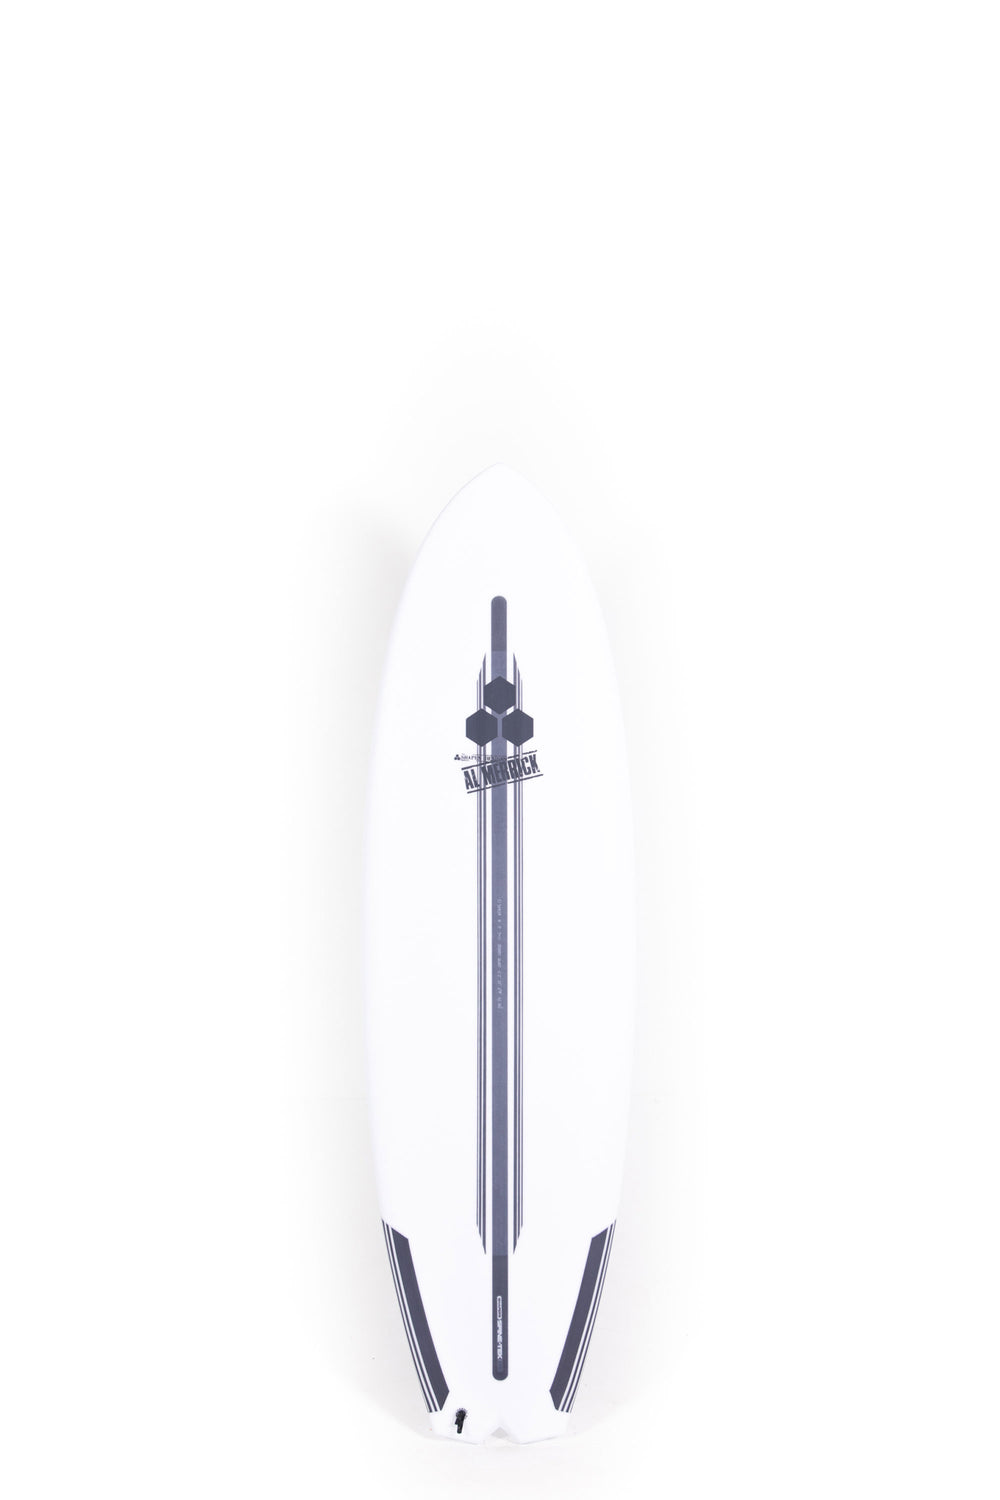 Pukas Surf Shop Channel Islands Bobby Quad Spine Tek 6'2